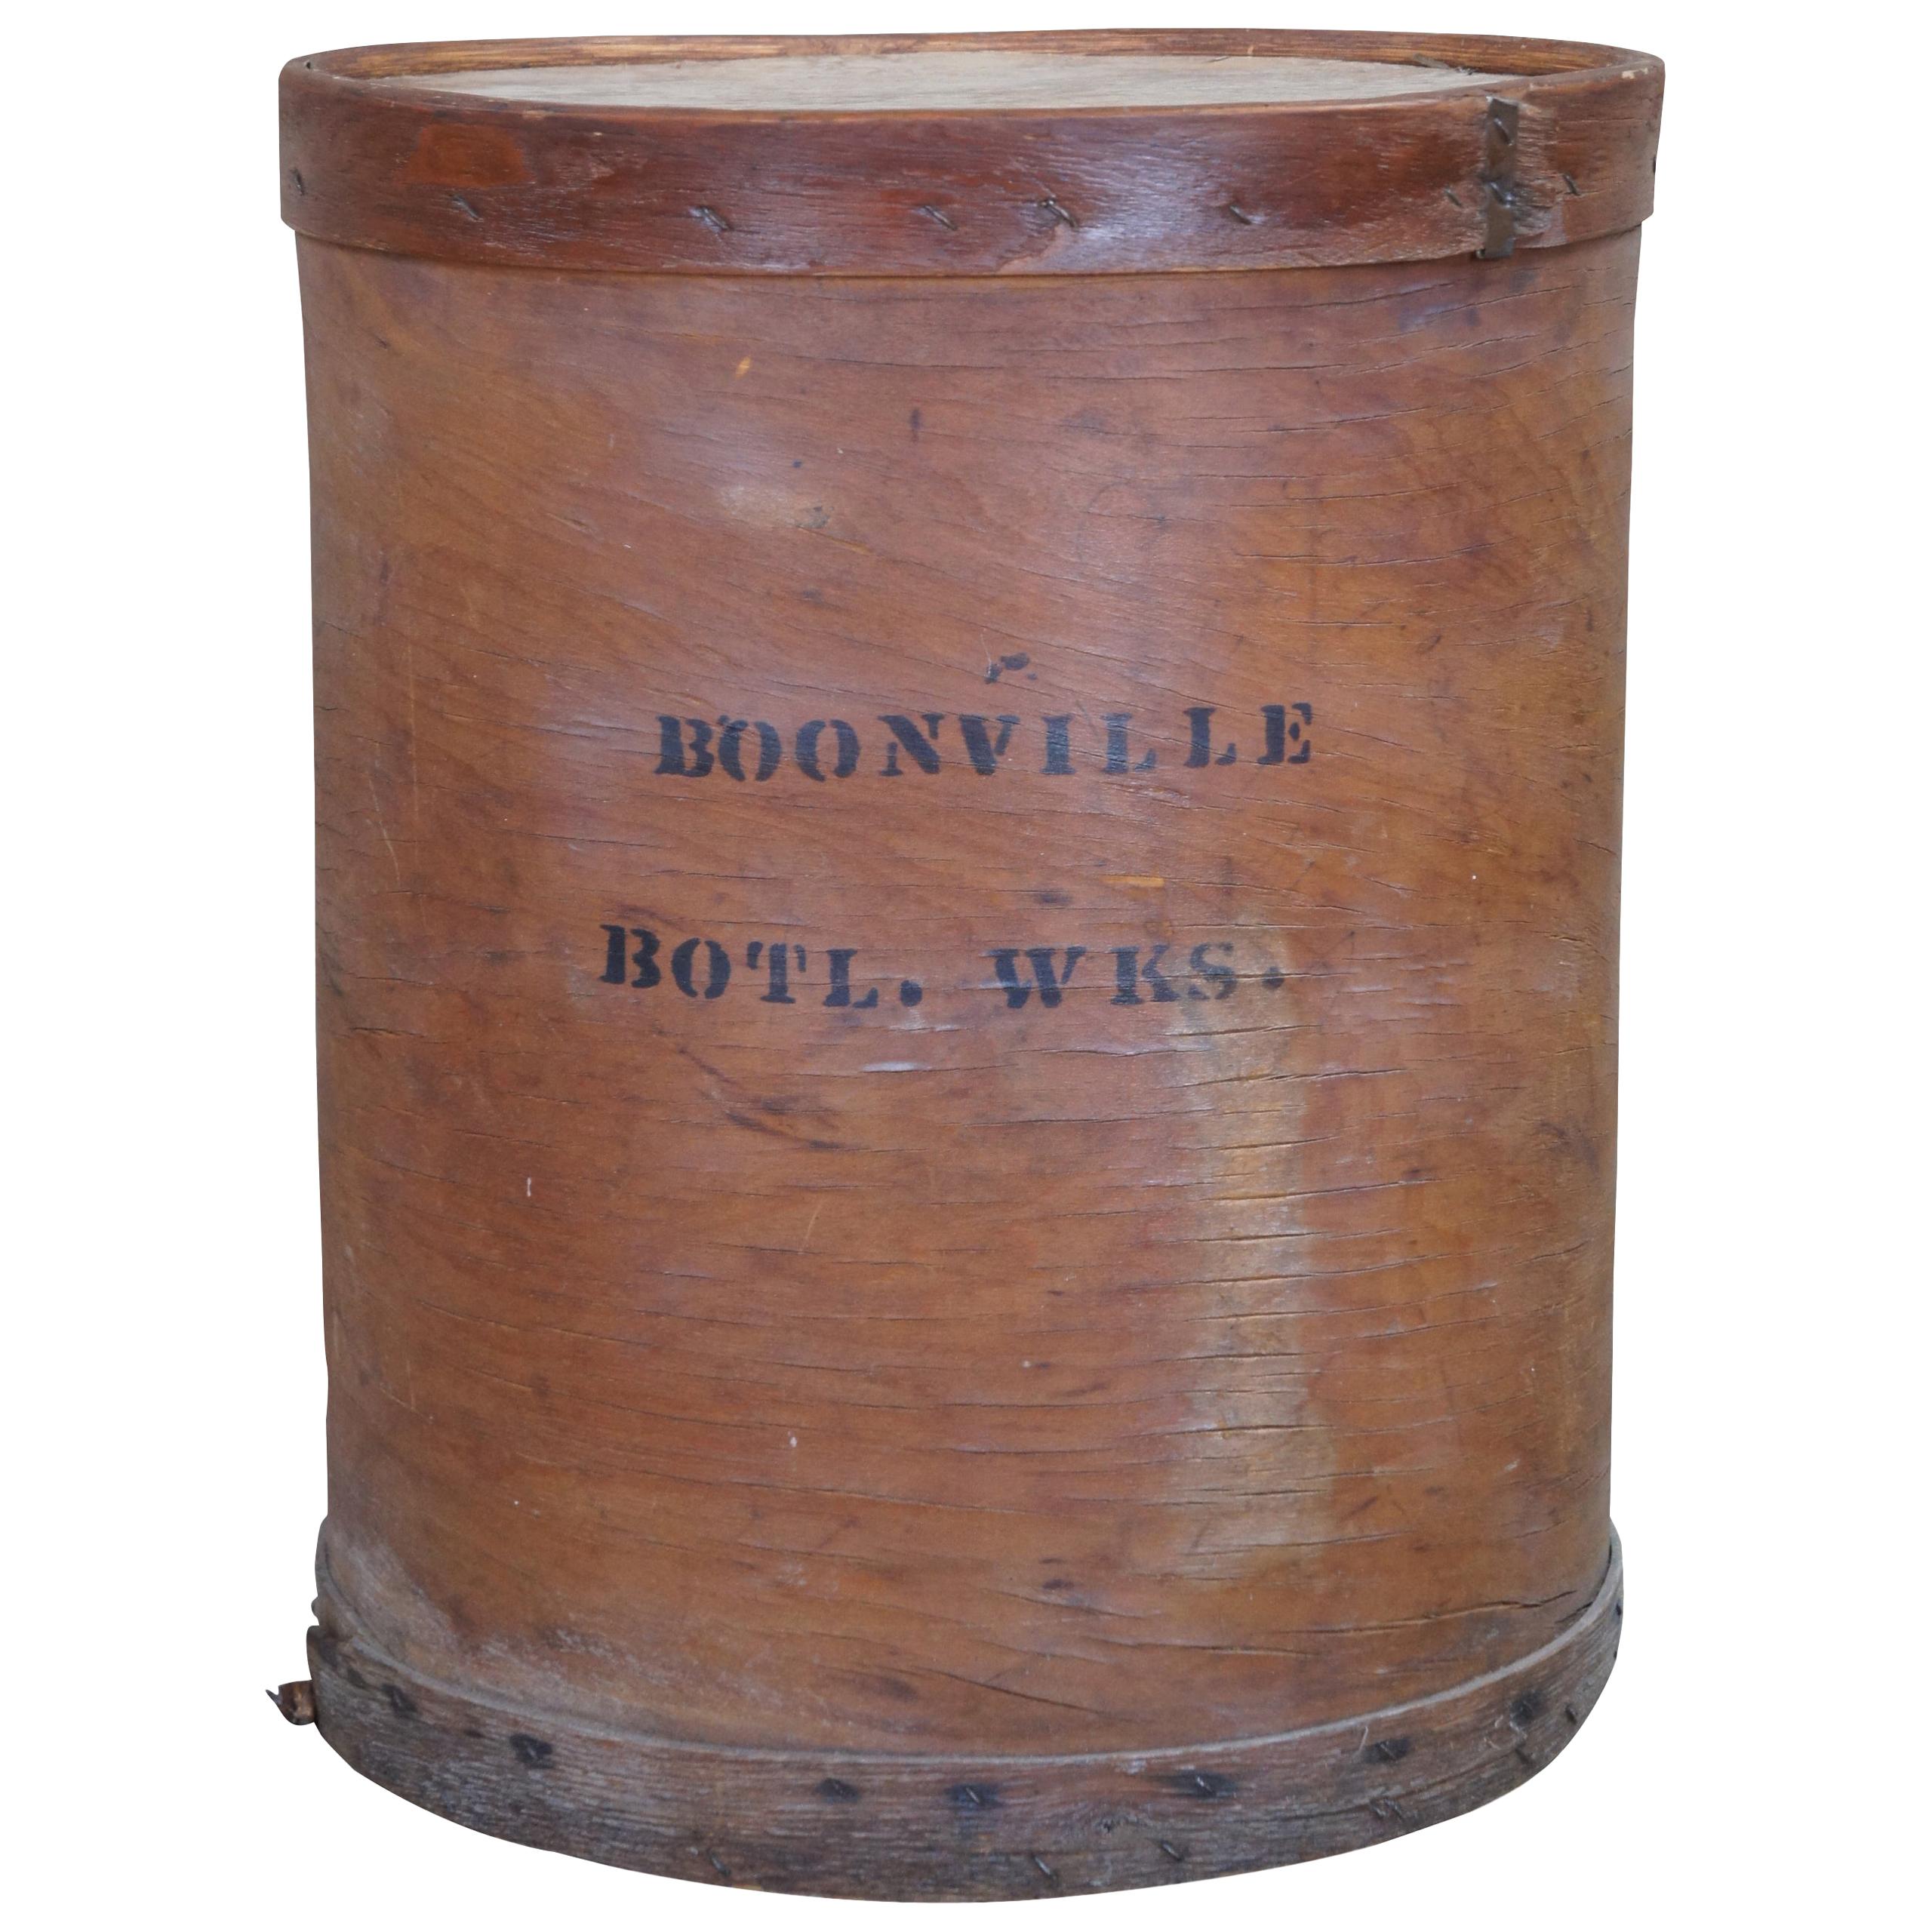 Primitive Boonville Bottling Works Bentwood Box Mercantile Barrel Industrial 23"